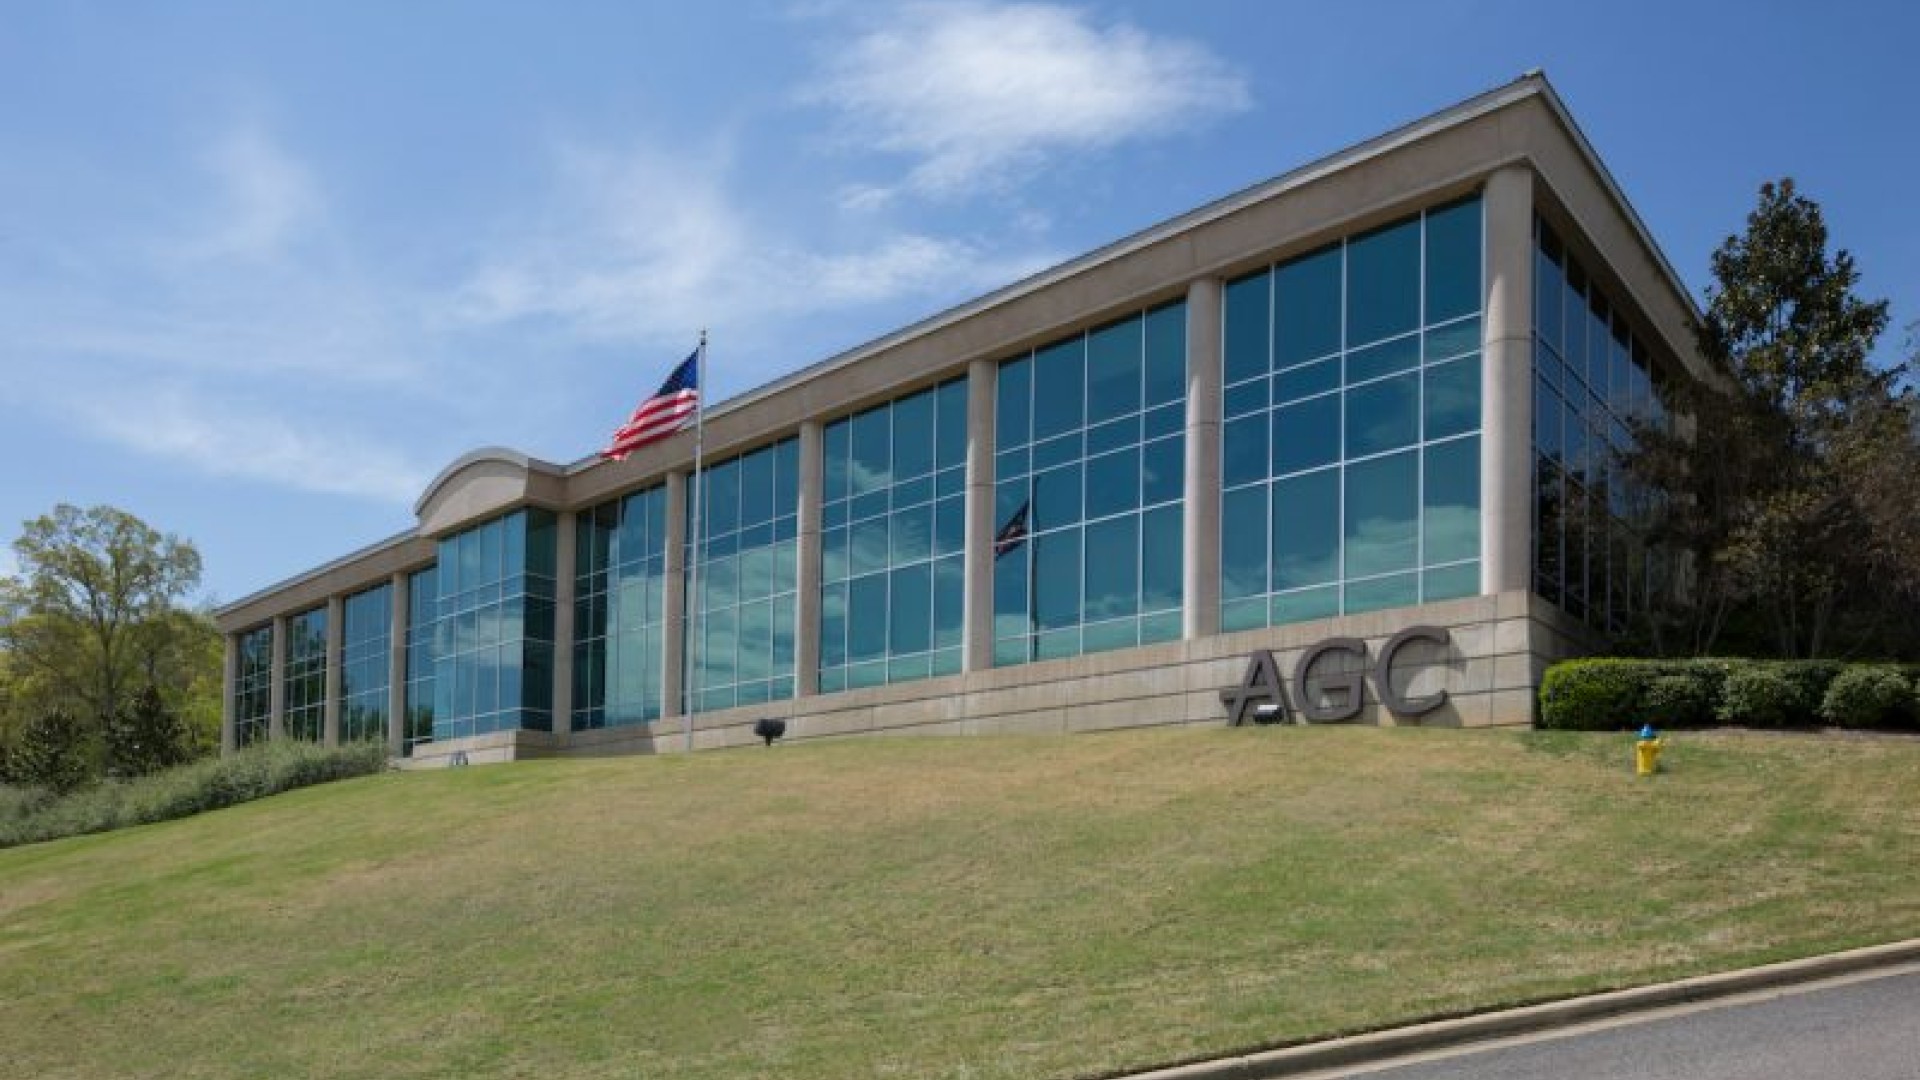 Alabama AGC